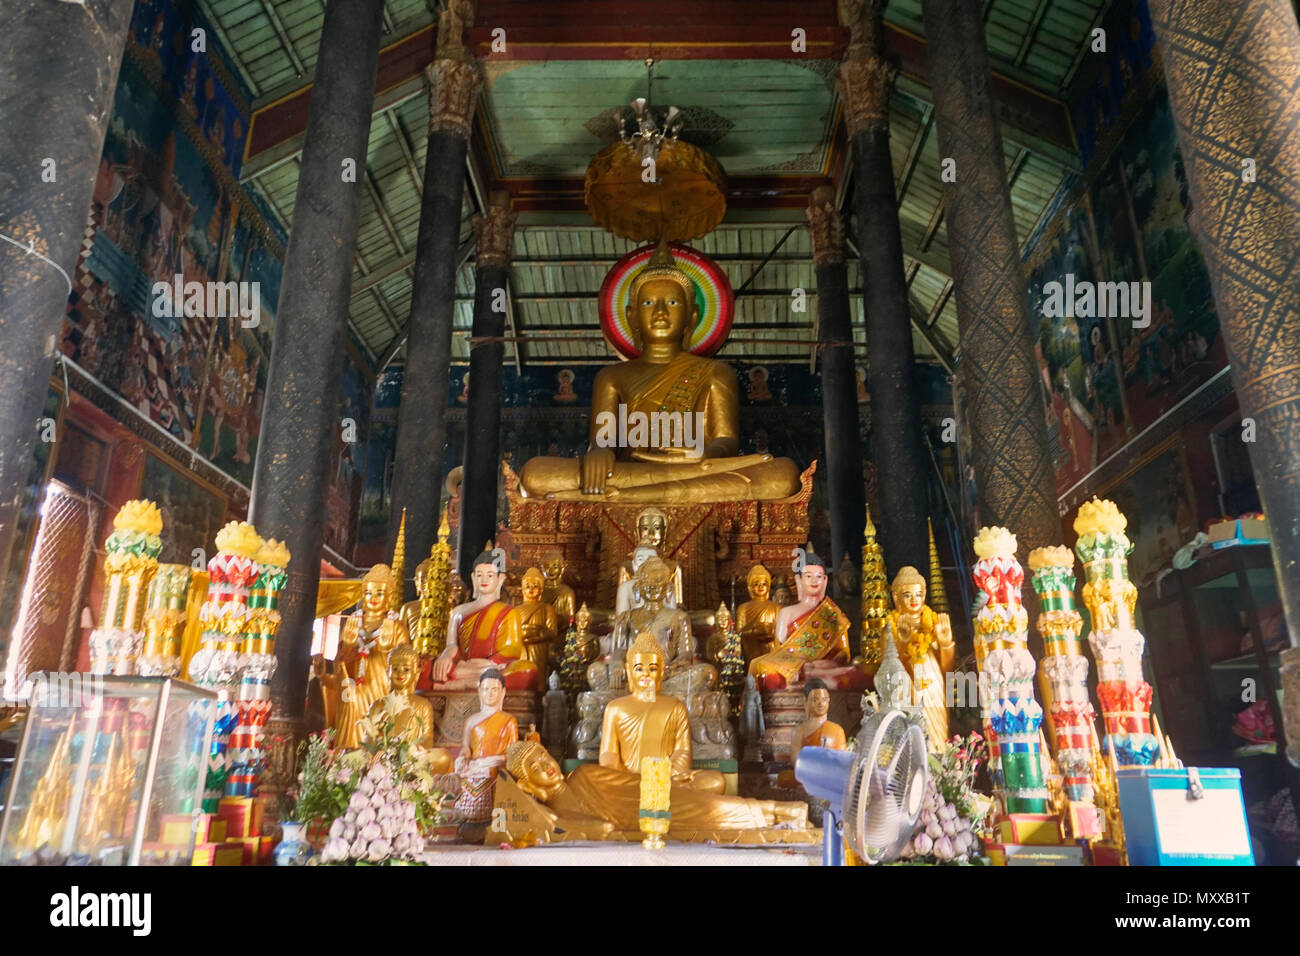 Saravoan Techo Pagoda, Phnom Penh, Cambodia Stock Photo